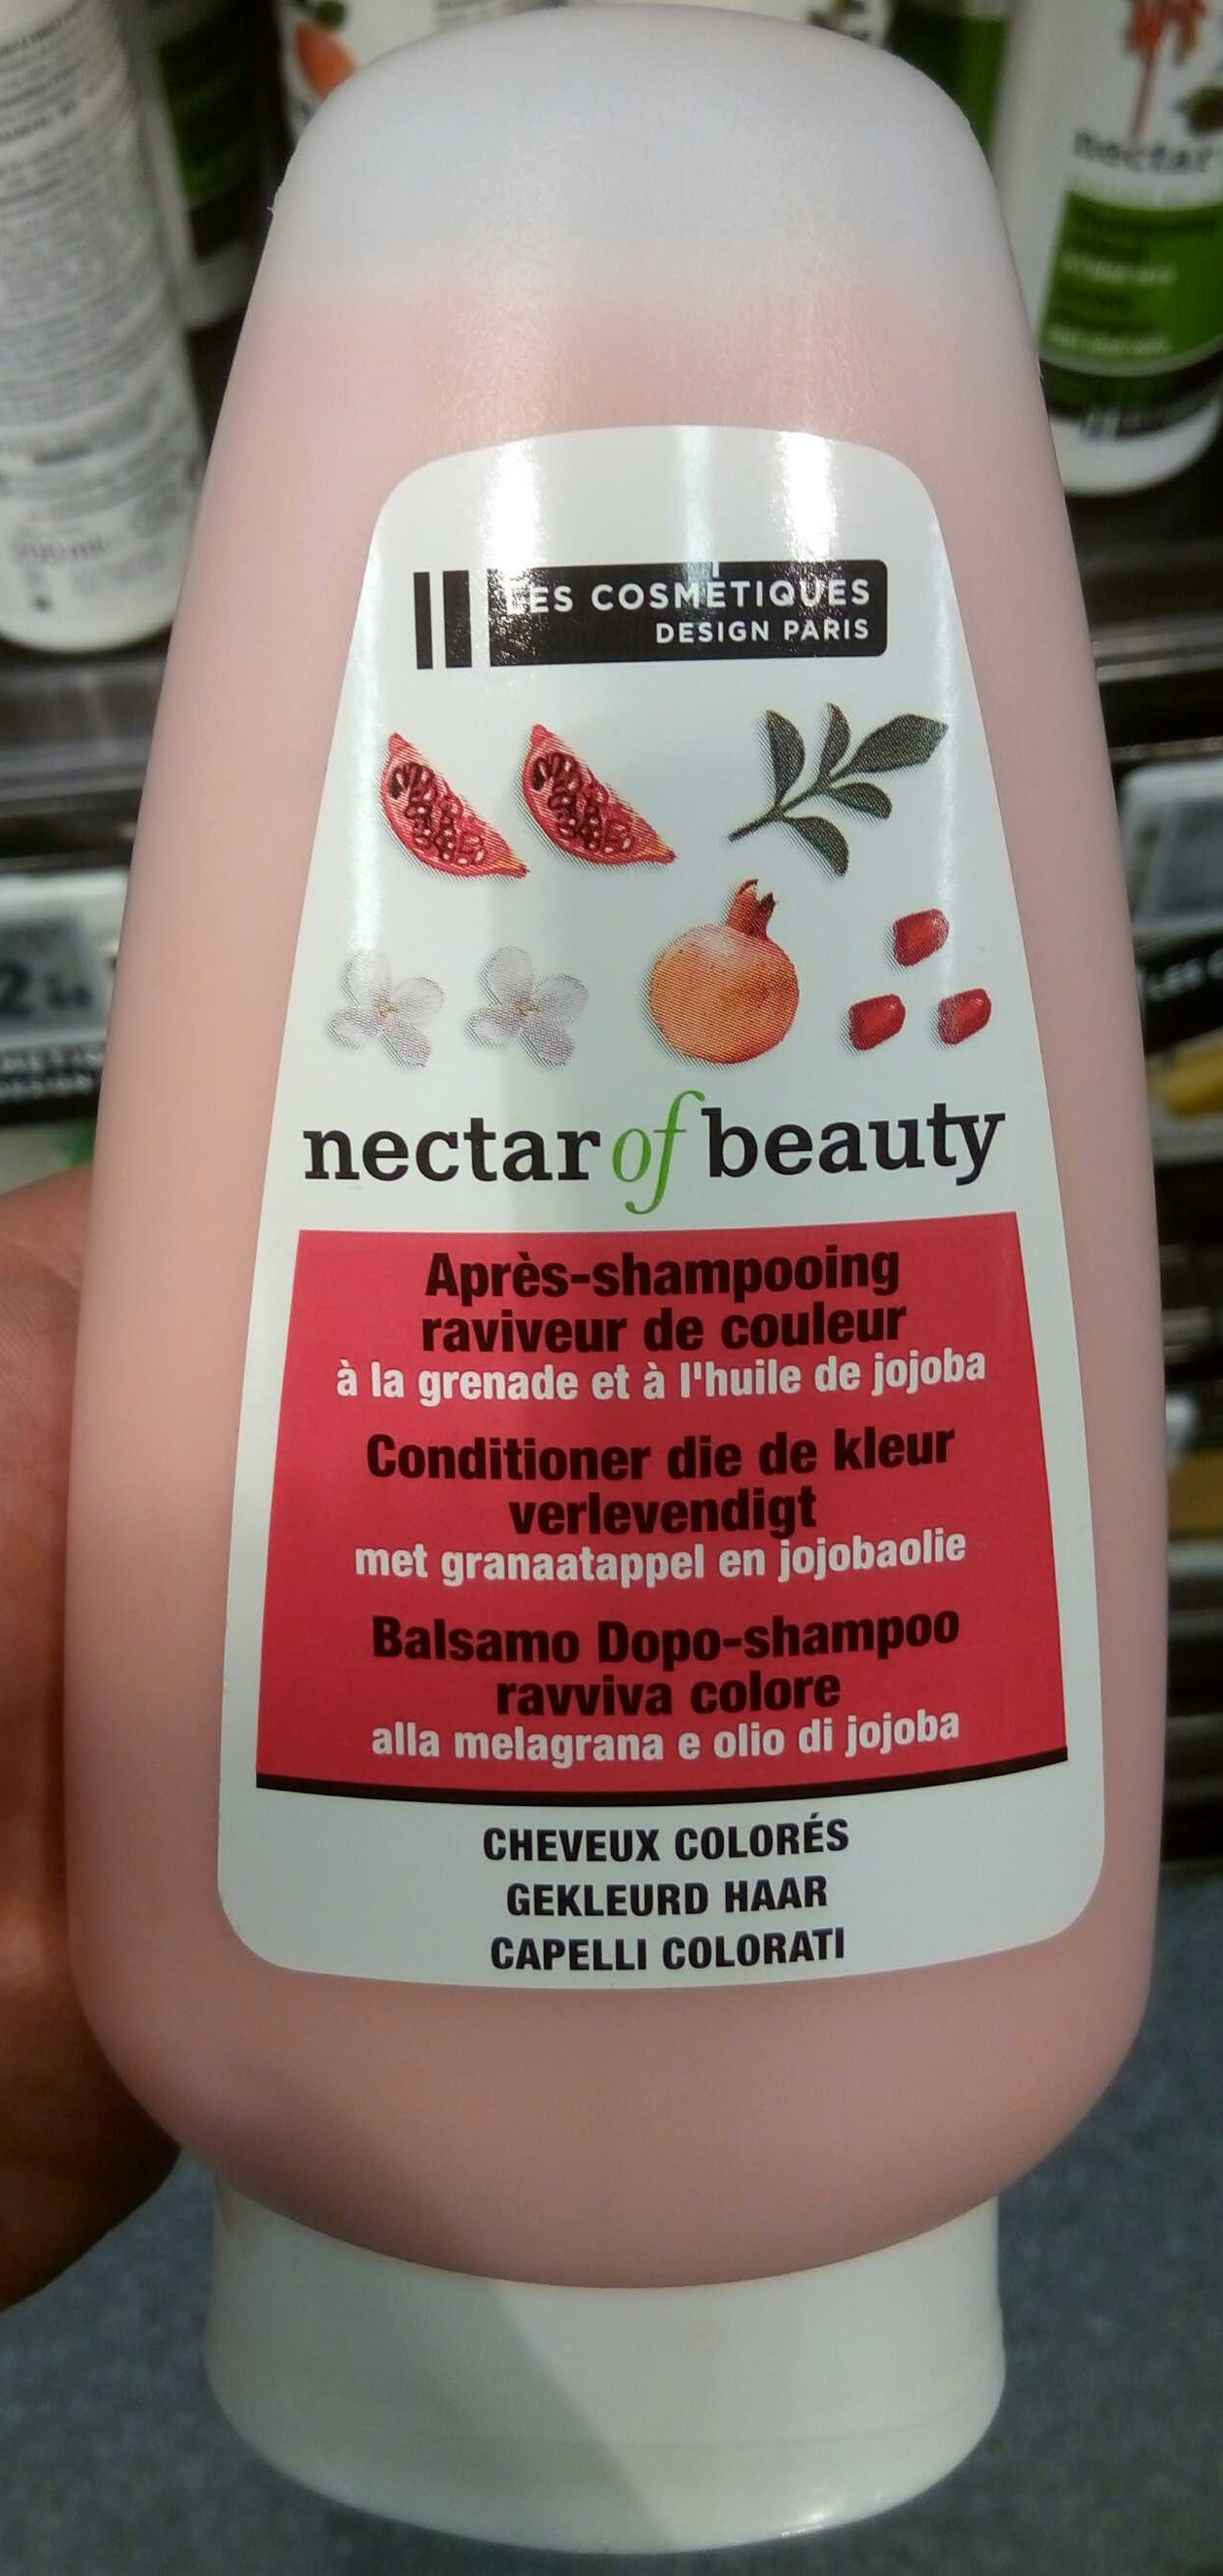 Après-shampooing raviveur de couleur - Product - fr